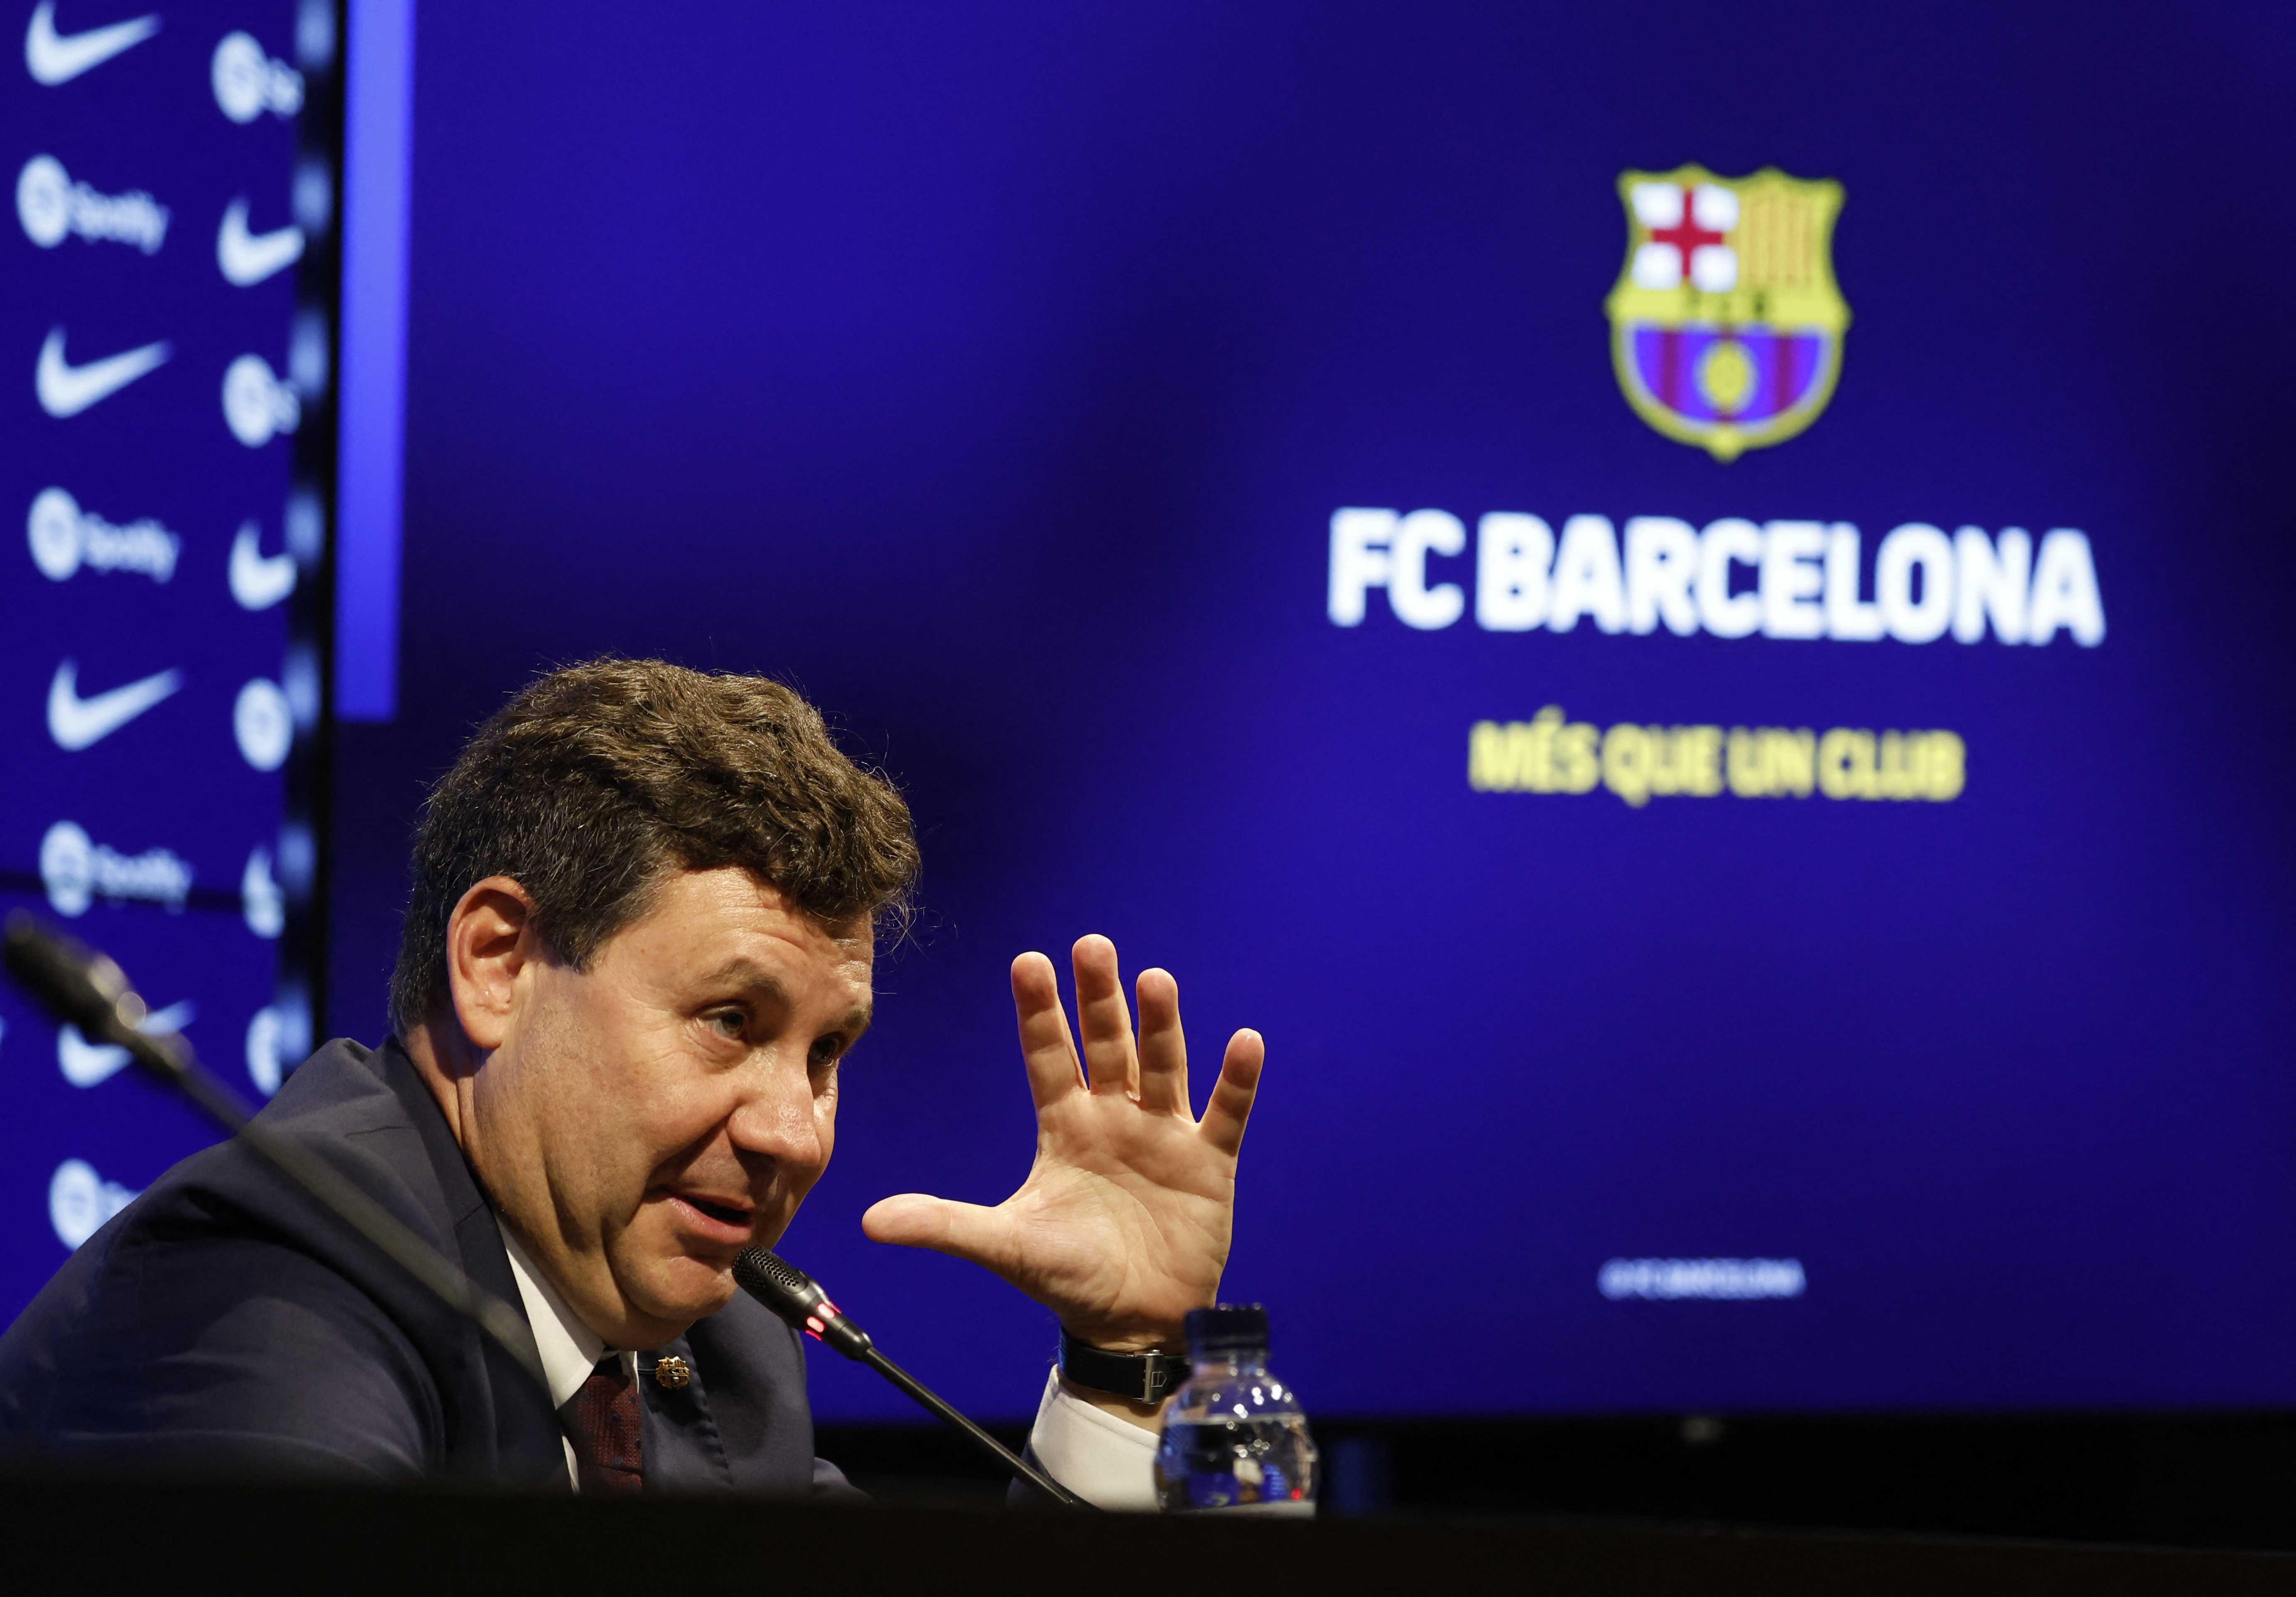 Eduard Romeu espera que La Liga aprueba pronto el plan de viabilidad que presentó el Barcelona para la reducción de costos (REUTERS/Albert Gea)